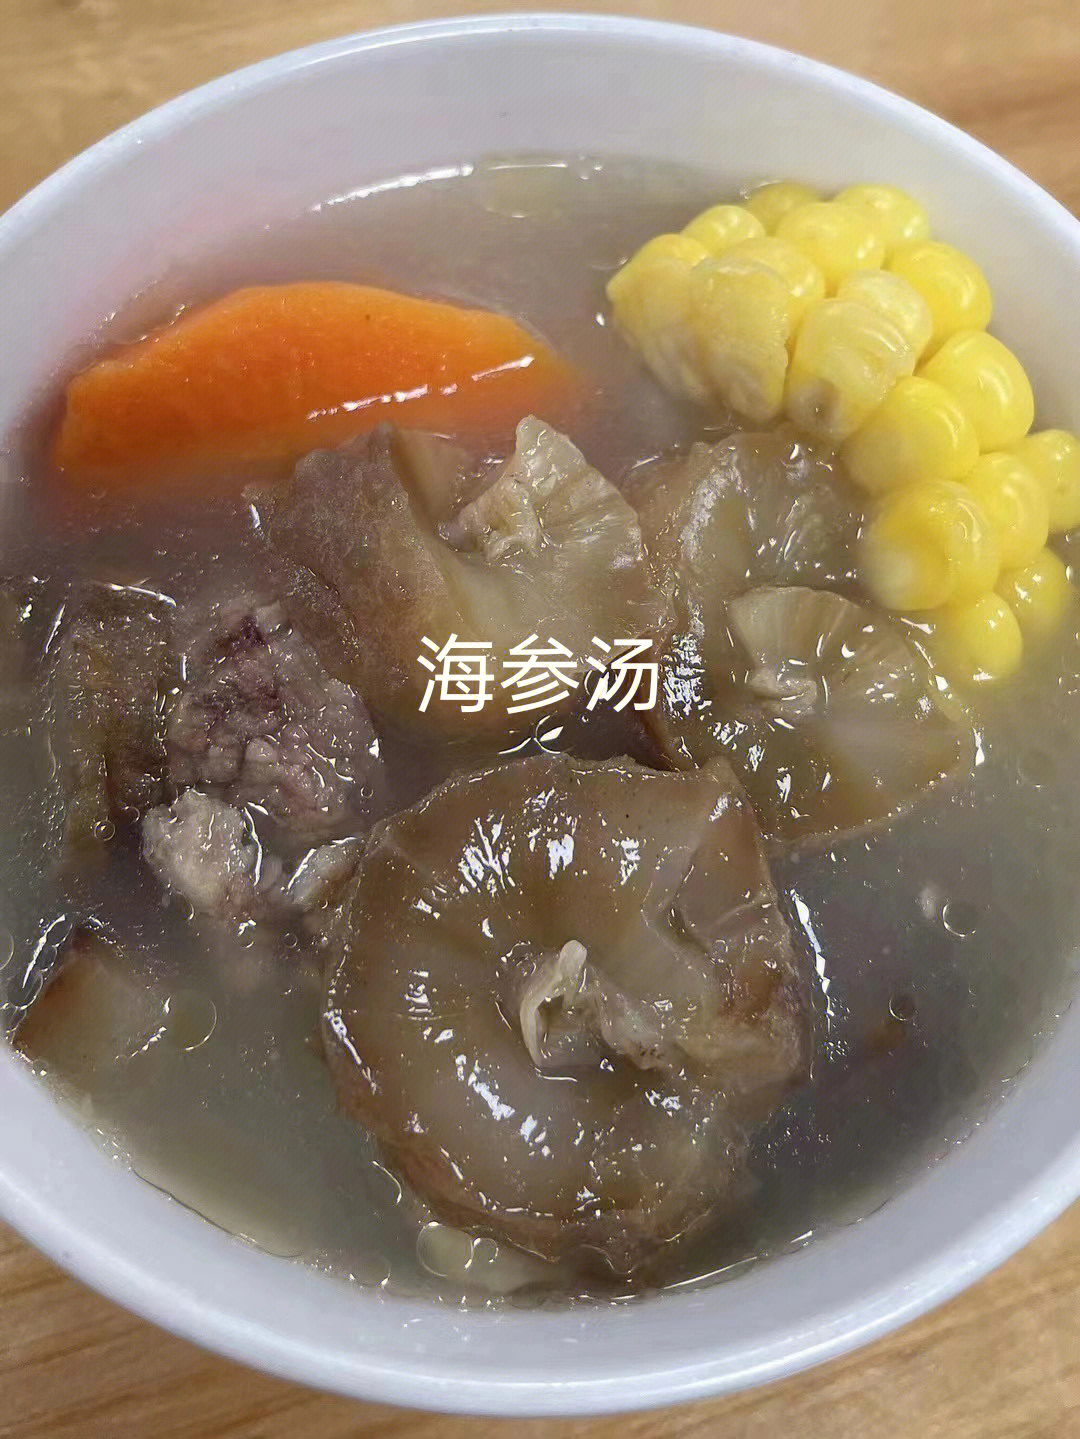 野生海参  吃货表示野生海参煲汤超级好吃97,肉厚紧实,口感q弹